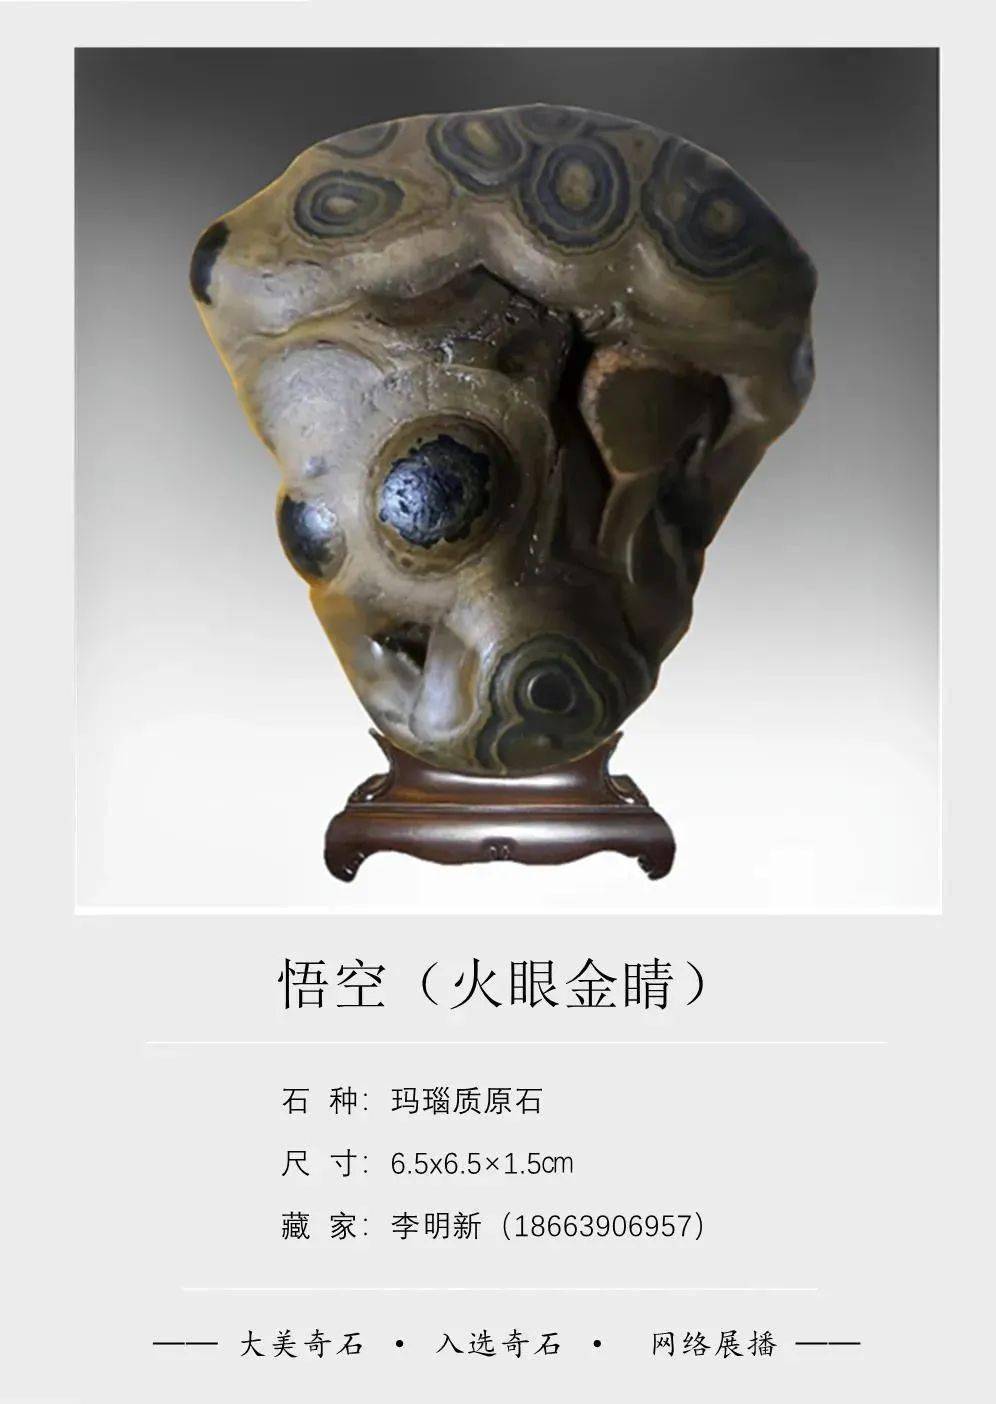 中国最霸气的奇石收藏家,2000万元收藏10万块奇石!